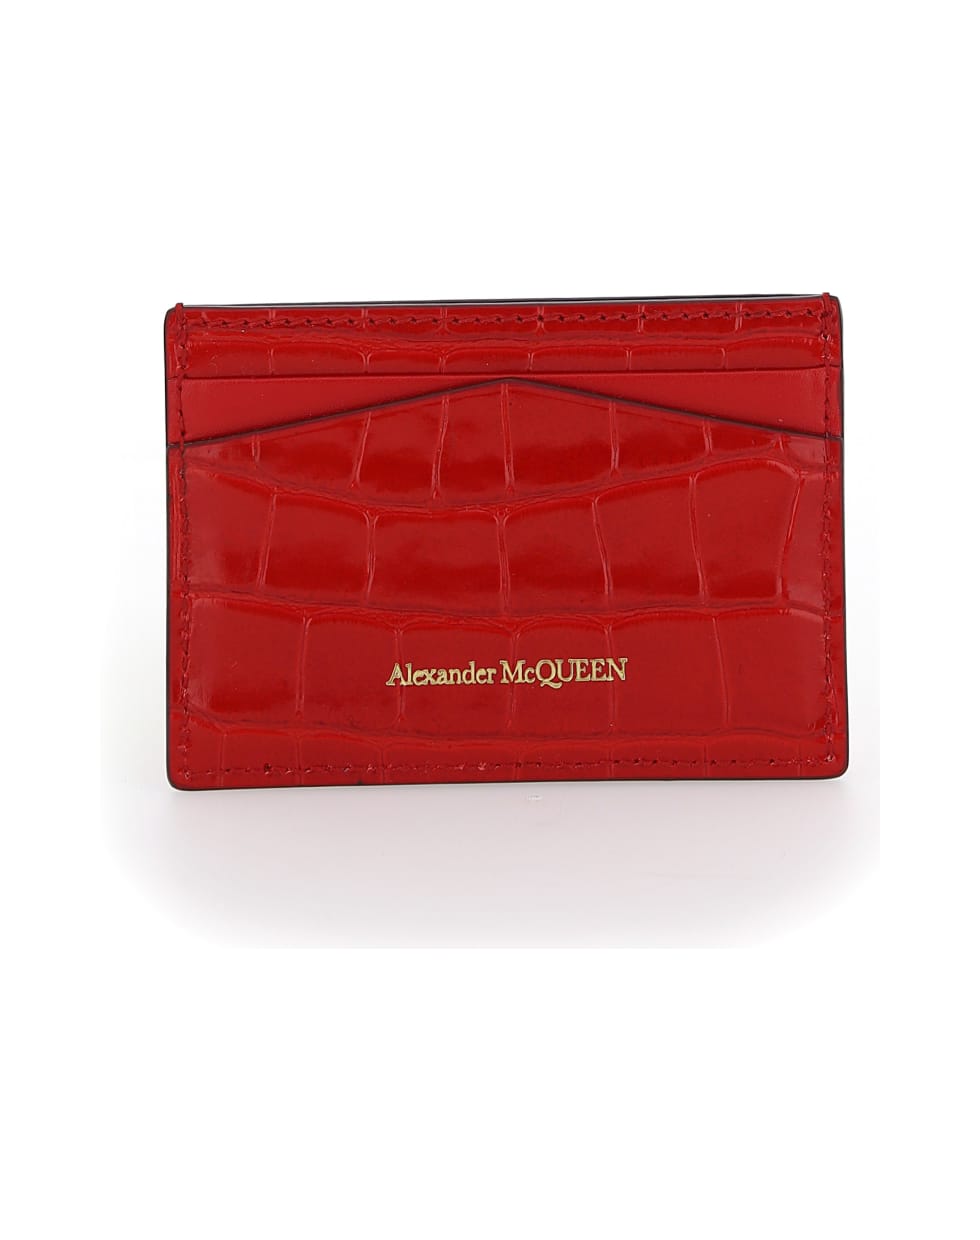 Alexander McQueen Card Holder - Deep red